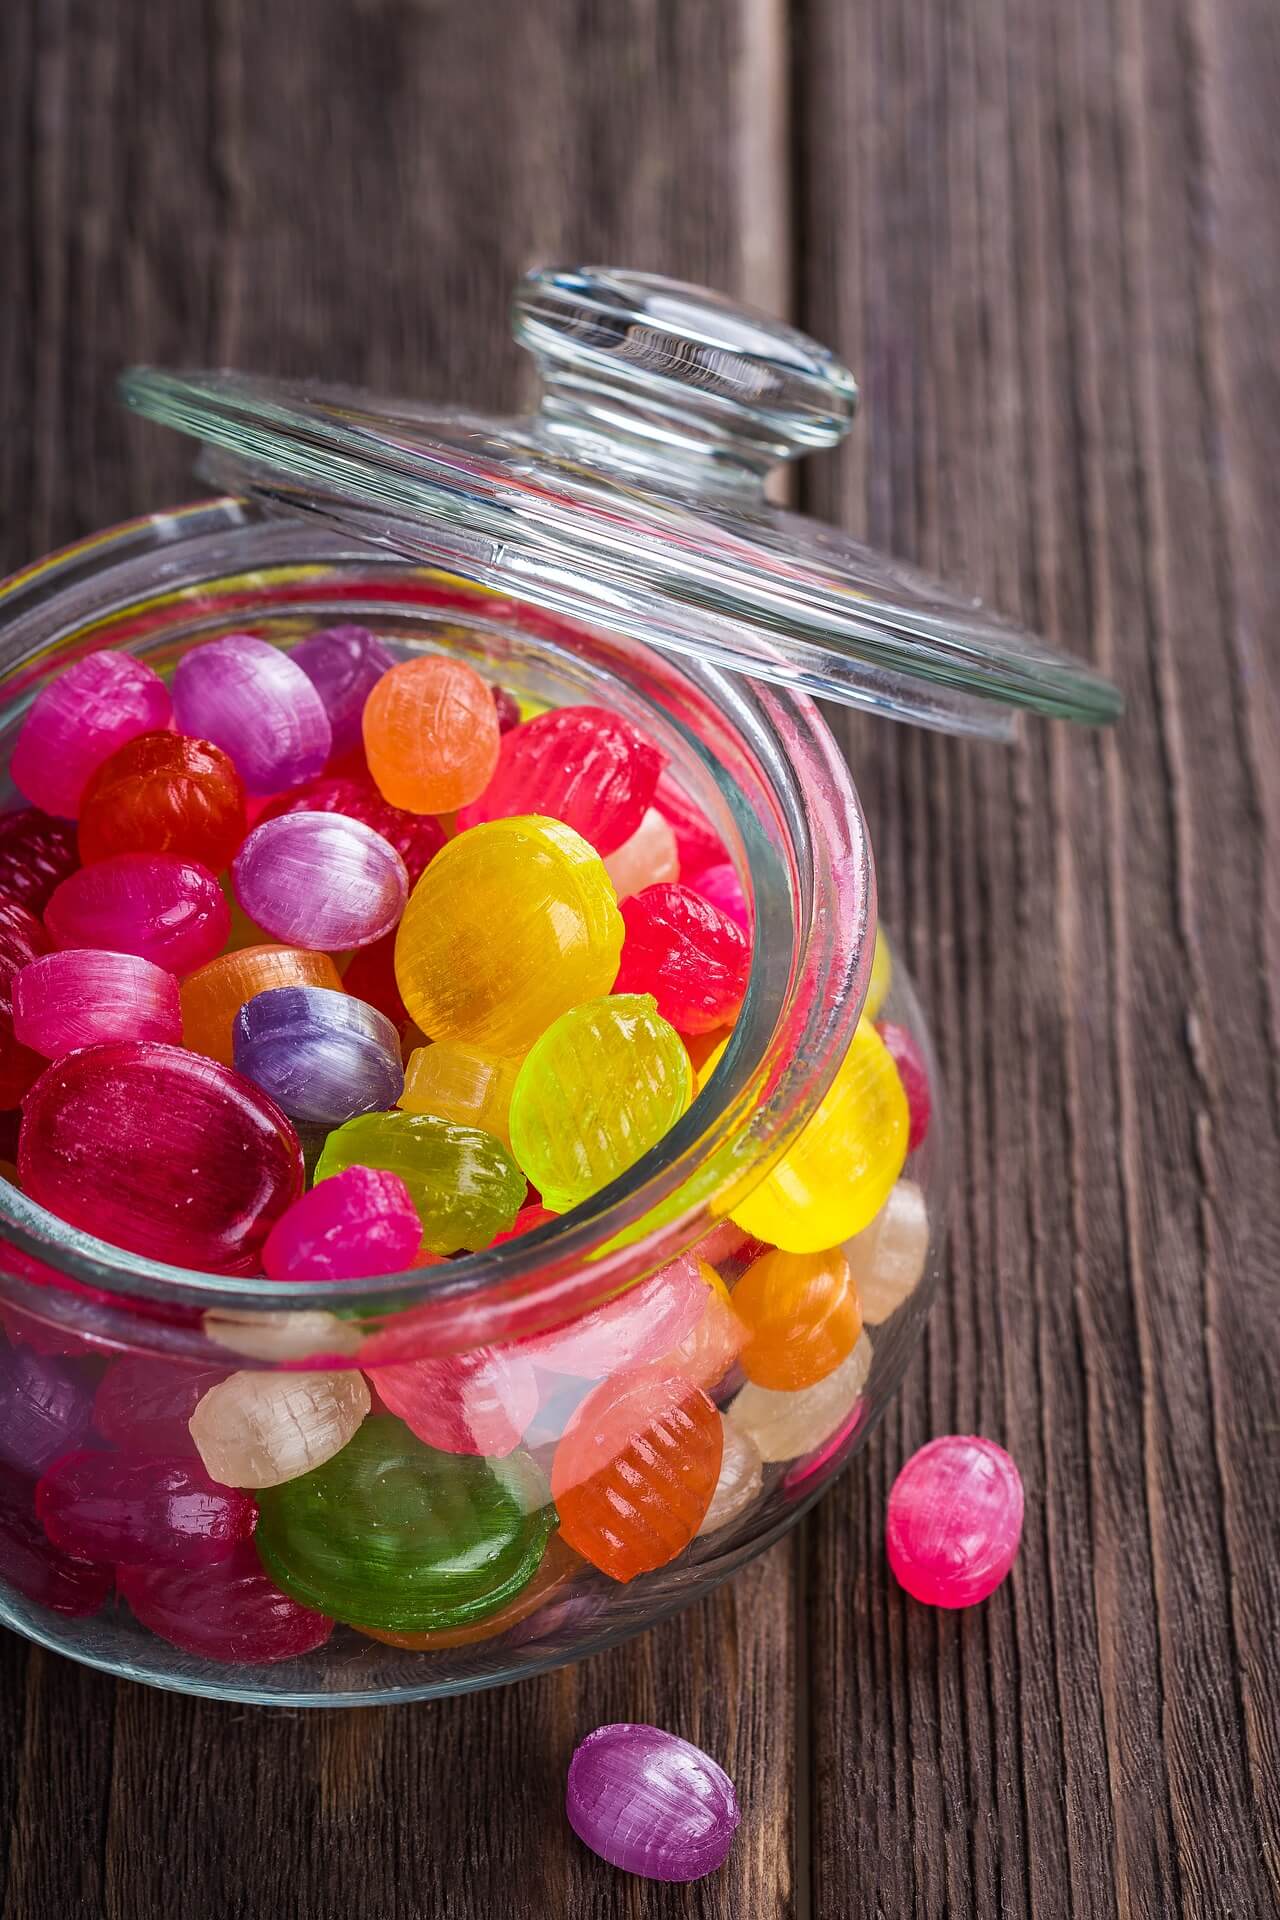 예쁜 사탕은 당류 섭취 기준에서 어느 정도의 당을 함유하고 있을까?